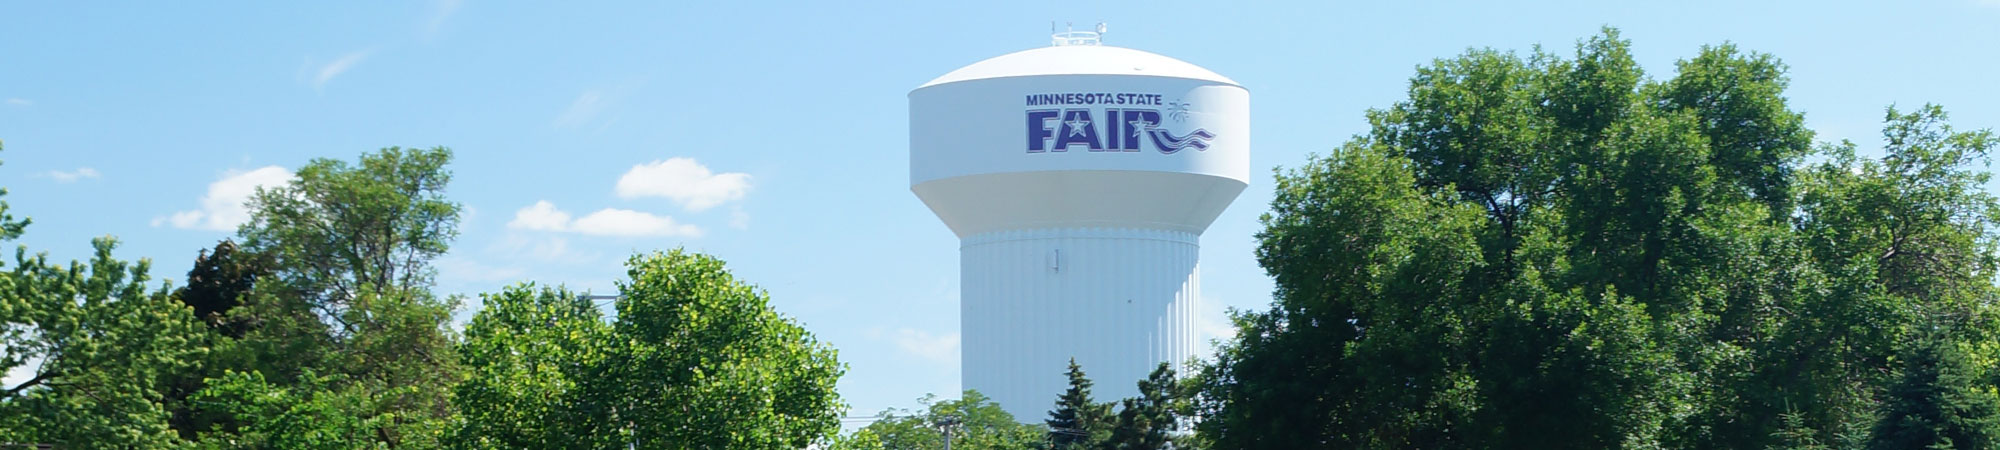 mn state fair